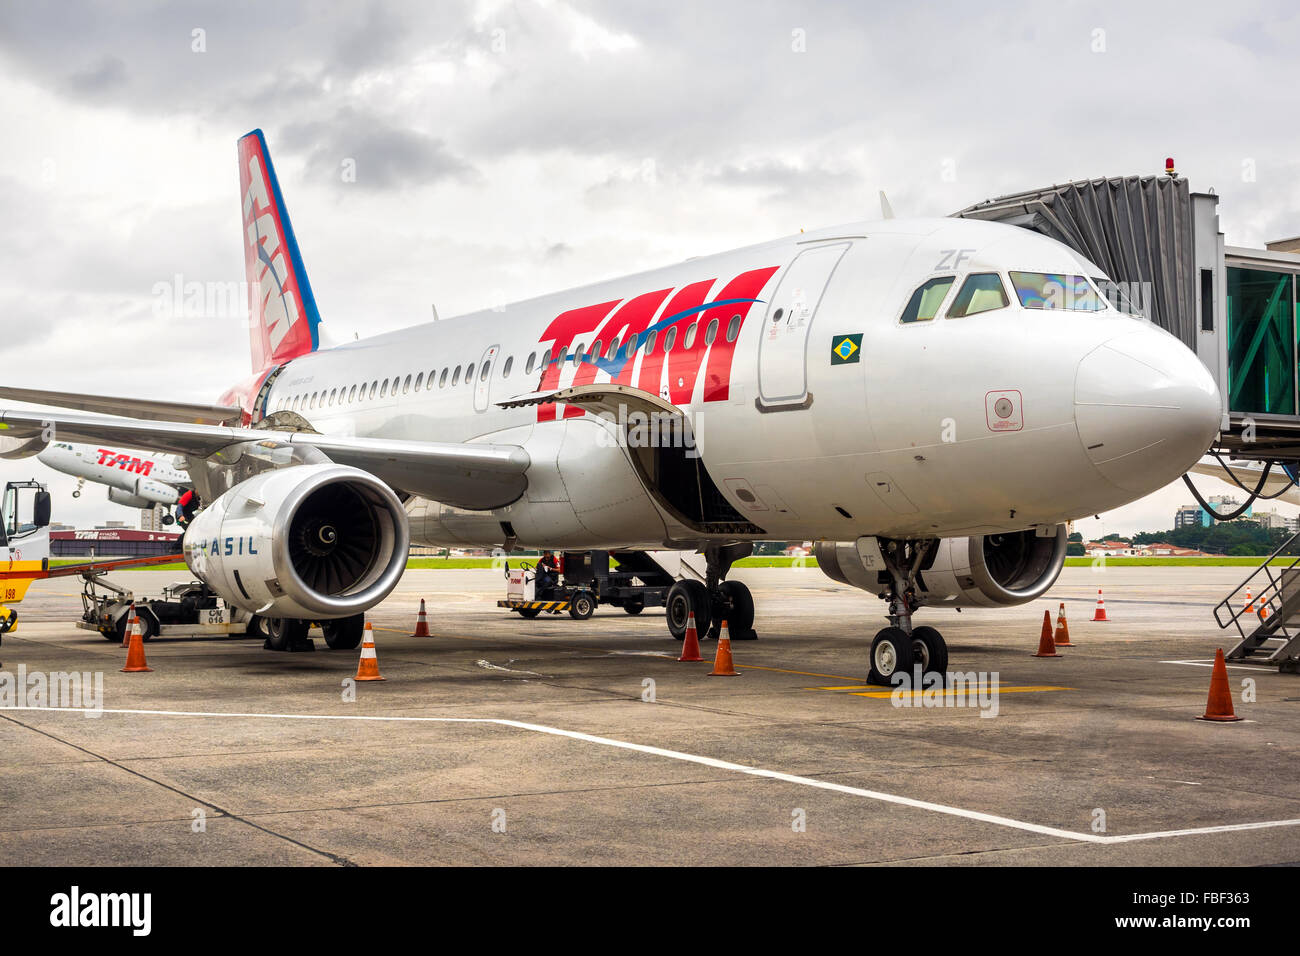 TAM Airlines Airbus 320 Parken am Flughafen Guarulhos in Sao Paulo, Brasilien. TAM ist die brasilianische Marke Latam Airlines. Stockfoto